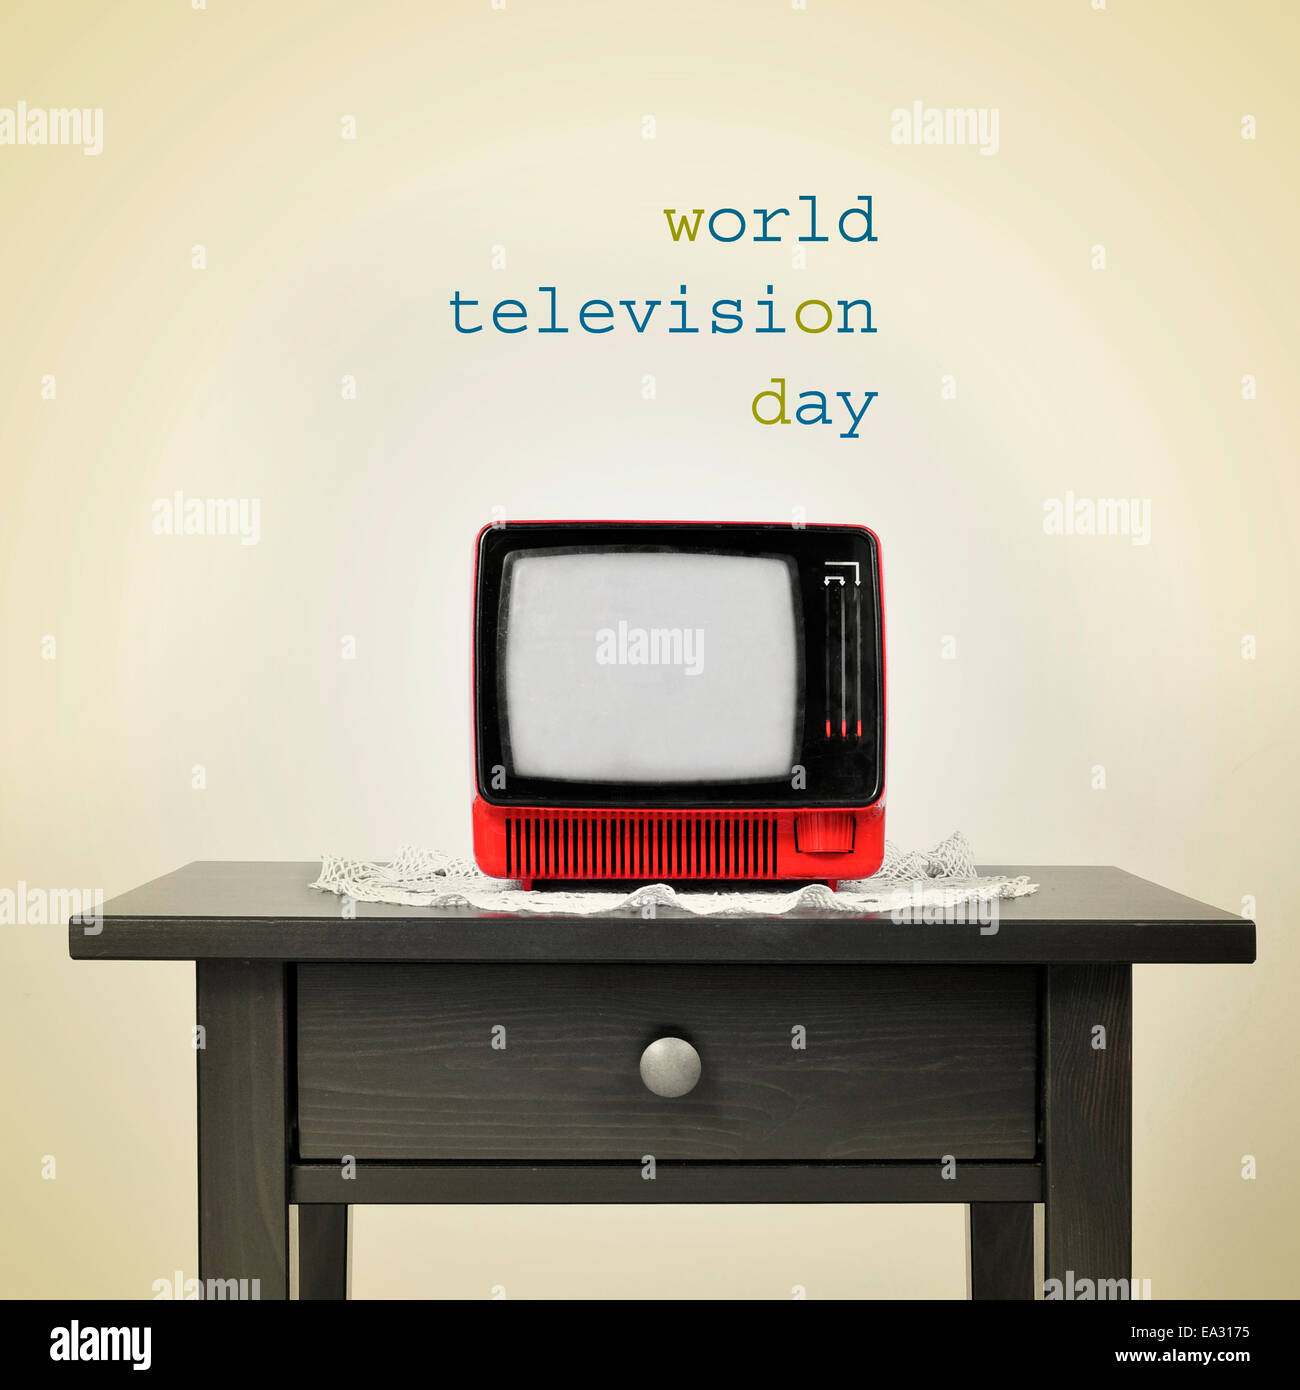 Un rosso antico televisione su una tabella e la frase world television giorno su un sfondo beige, con un effetto retrò Foto Stock